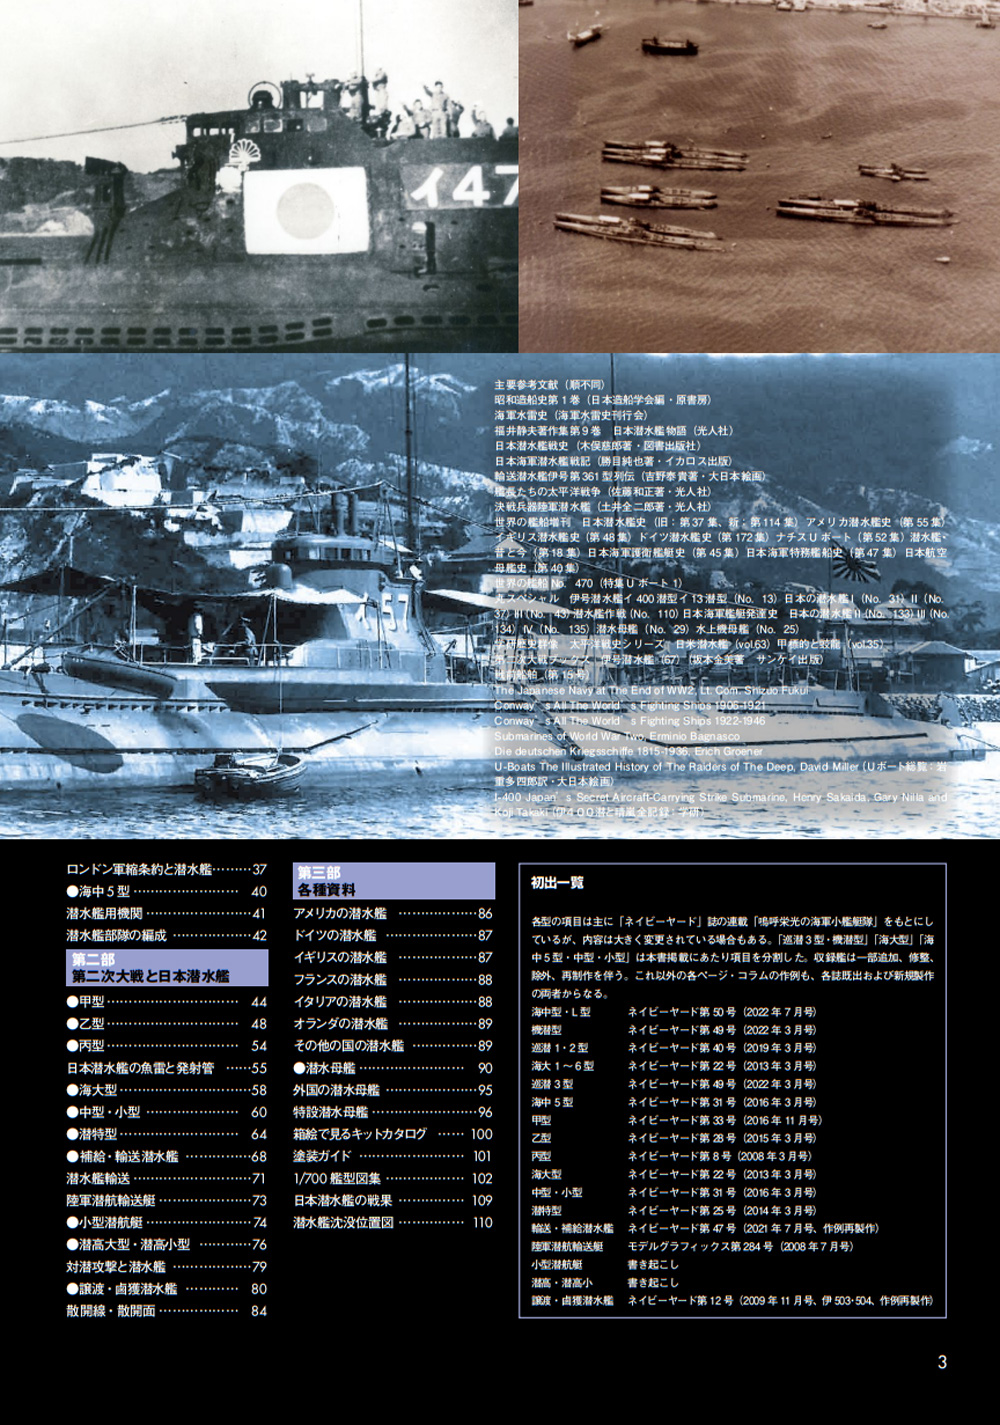 日本海軍小艦艇 ビジュアルガイド 3 潜水艦編 本 (大日本絵画 船舶関連書籍 No.23368-2) 商品画像_2